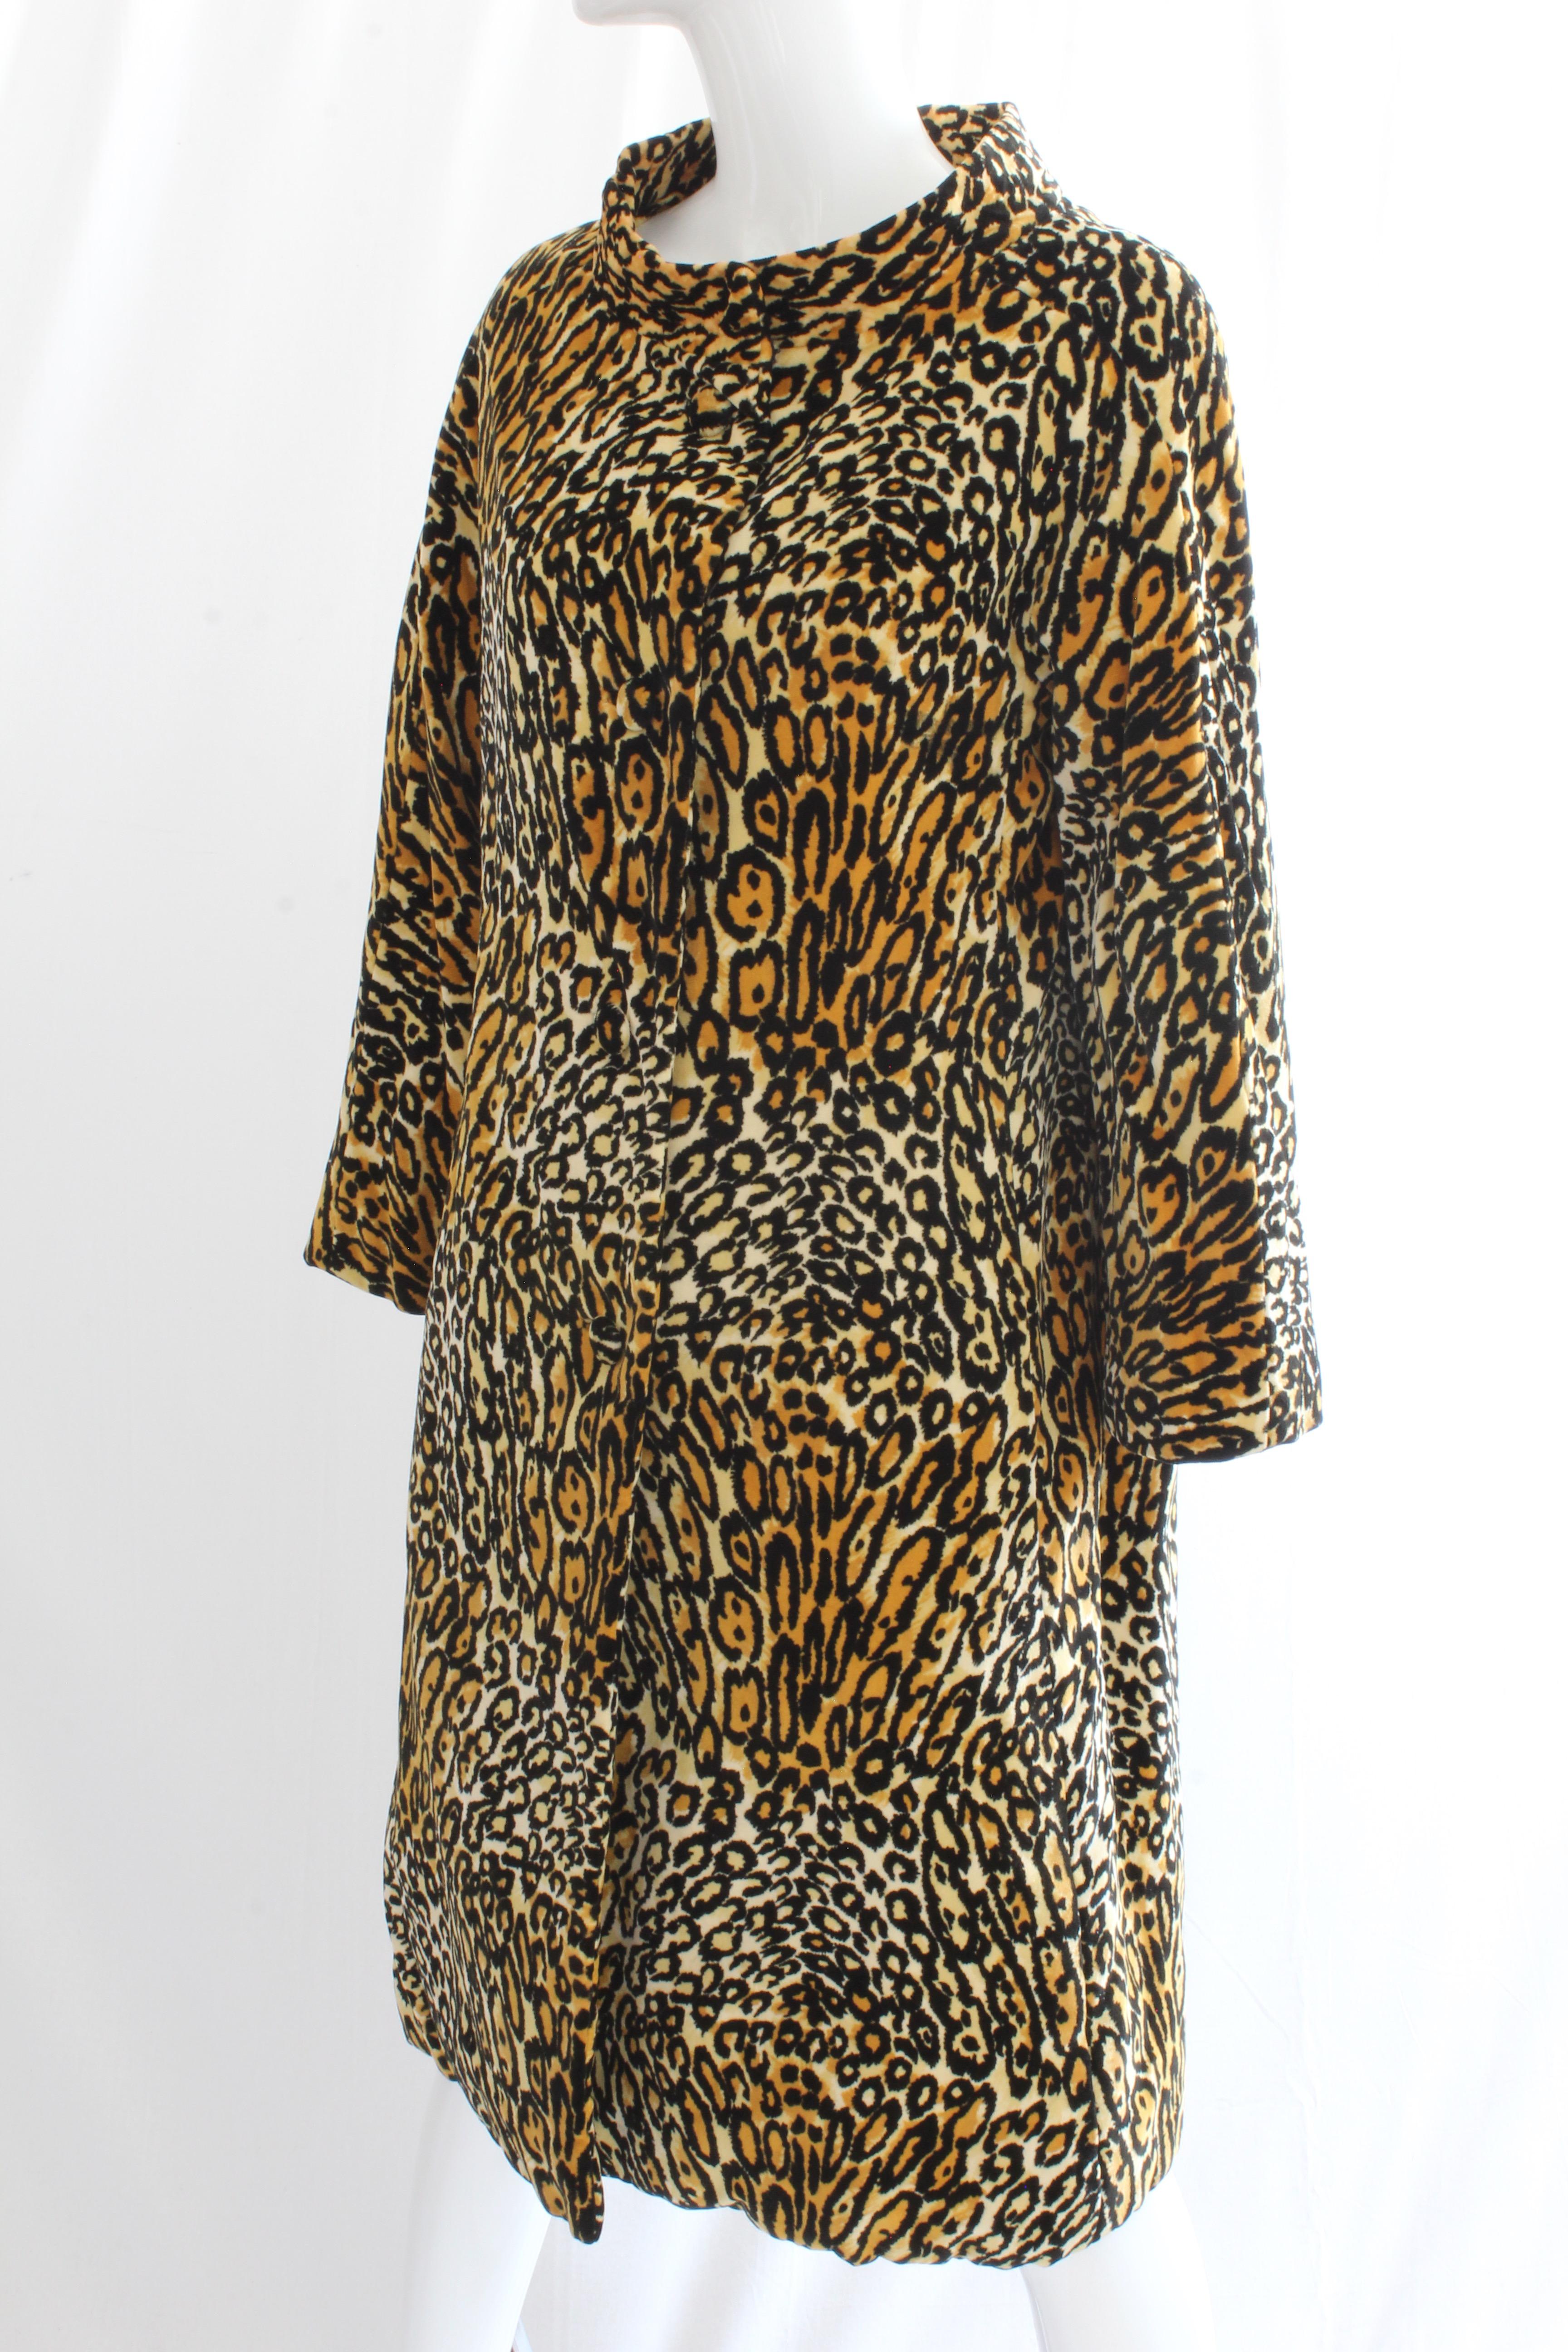 Bill Blass for Bond Street Velvet Leopard Print Coat 1970s Sz M In Good Condition In Port Saint Lucie, FL